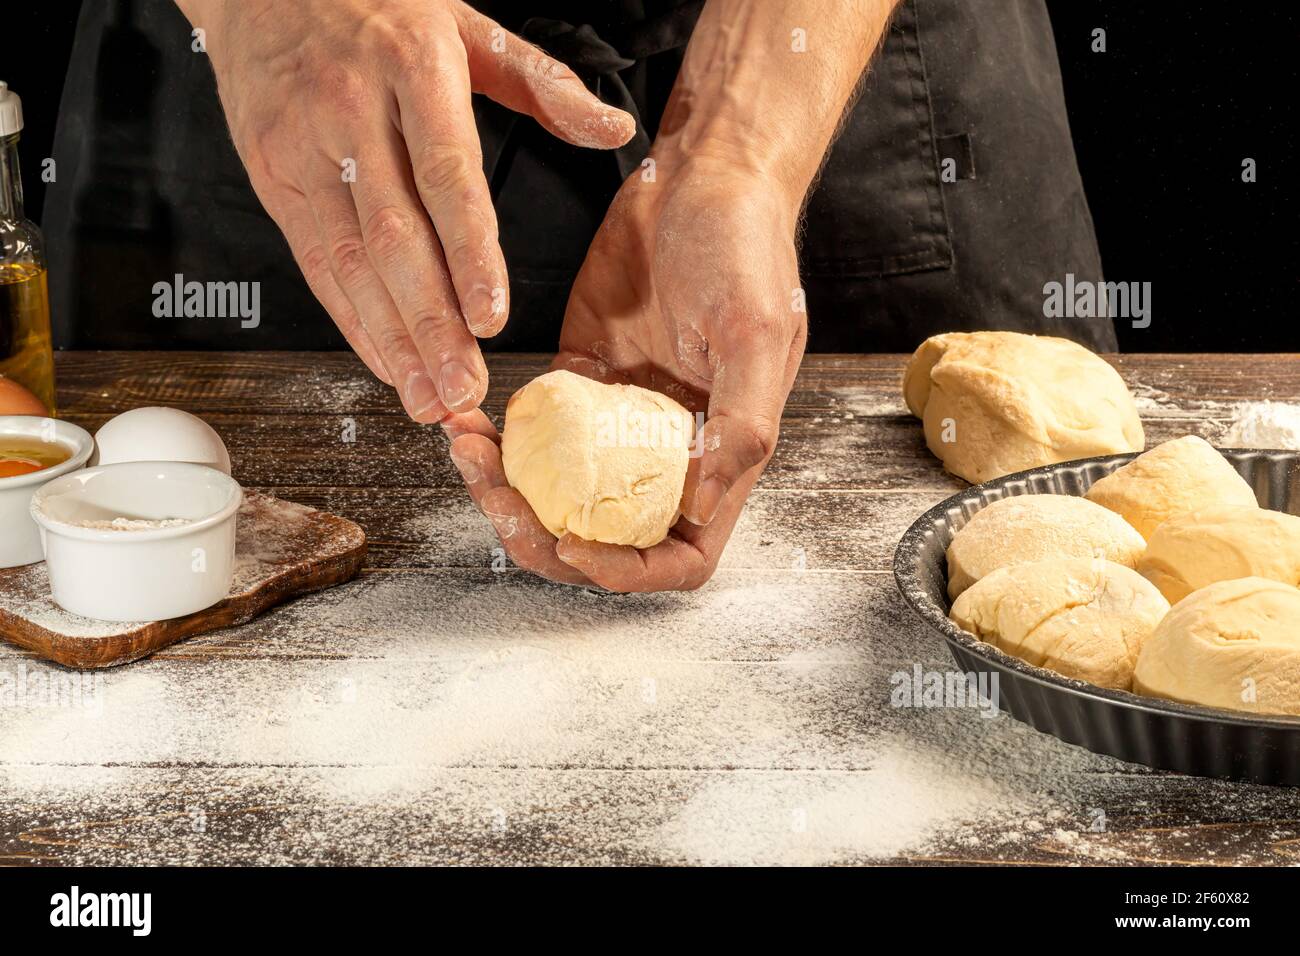 Elaboración de pan casero. Instrucciones paso a paso. El cocinero